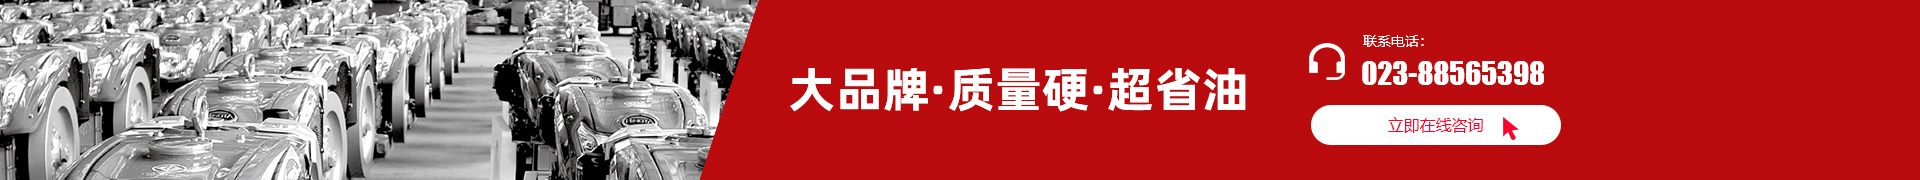 重慶市凱米爾動力機械有限公司